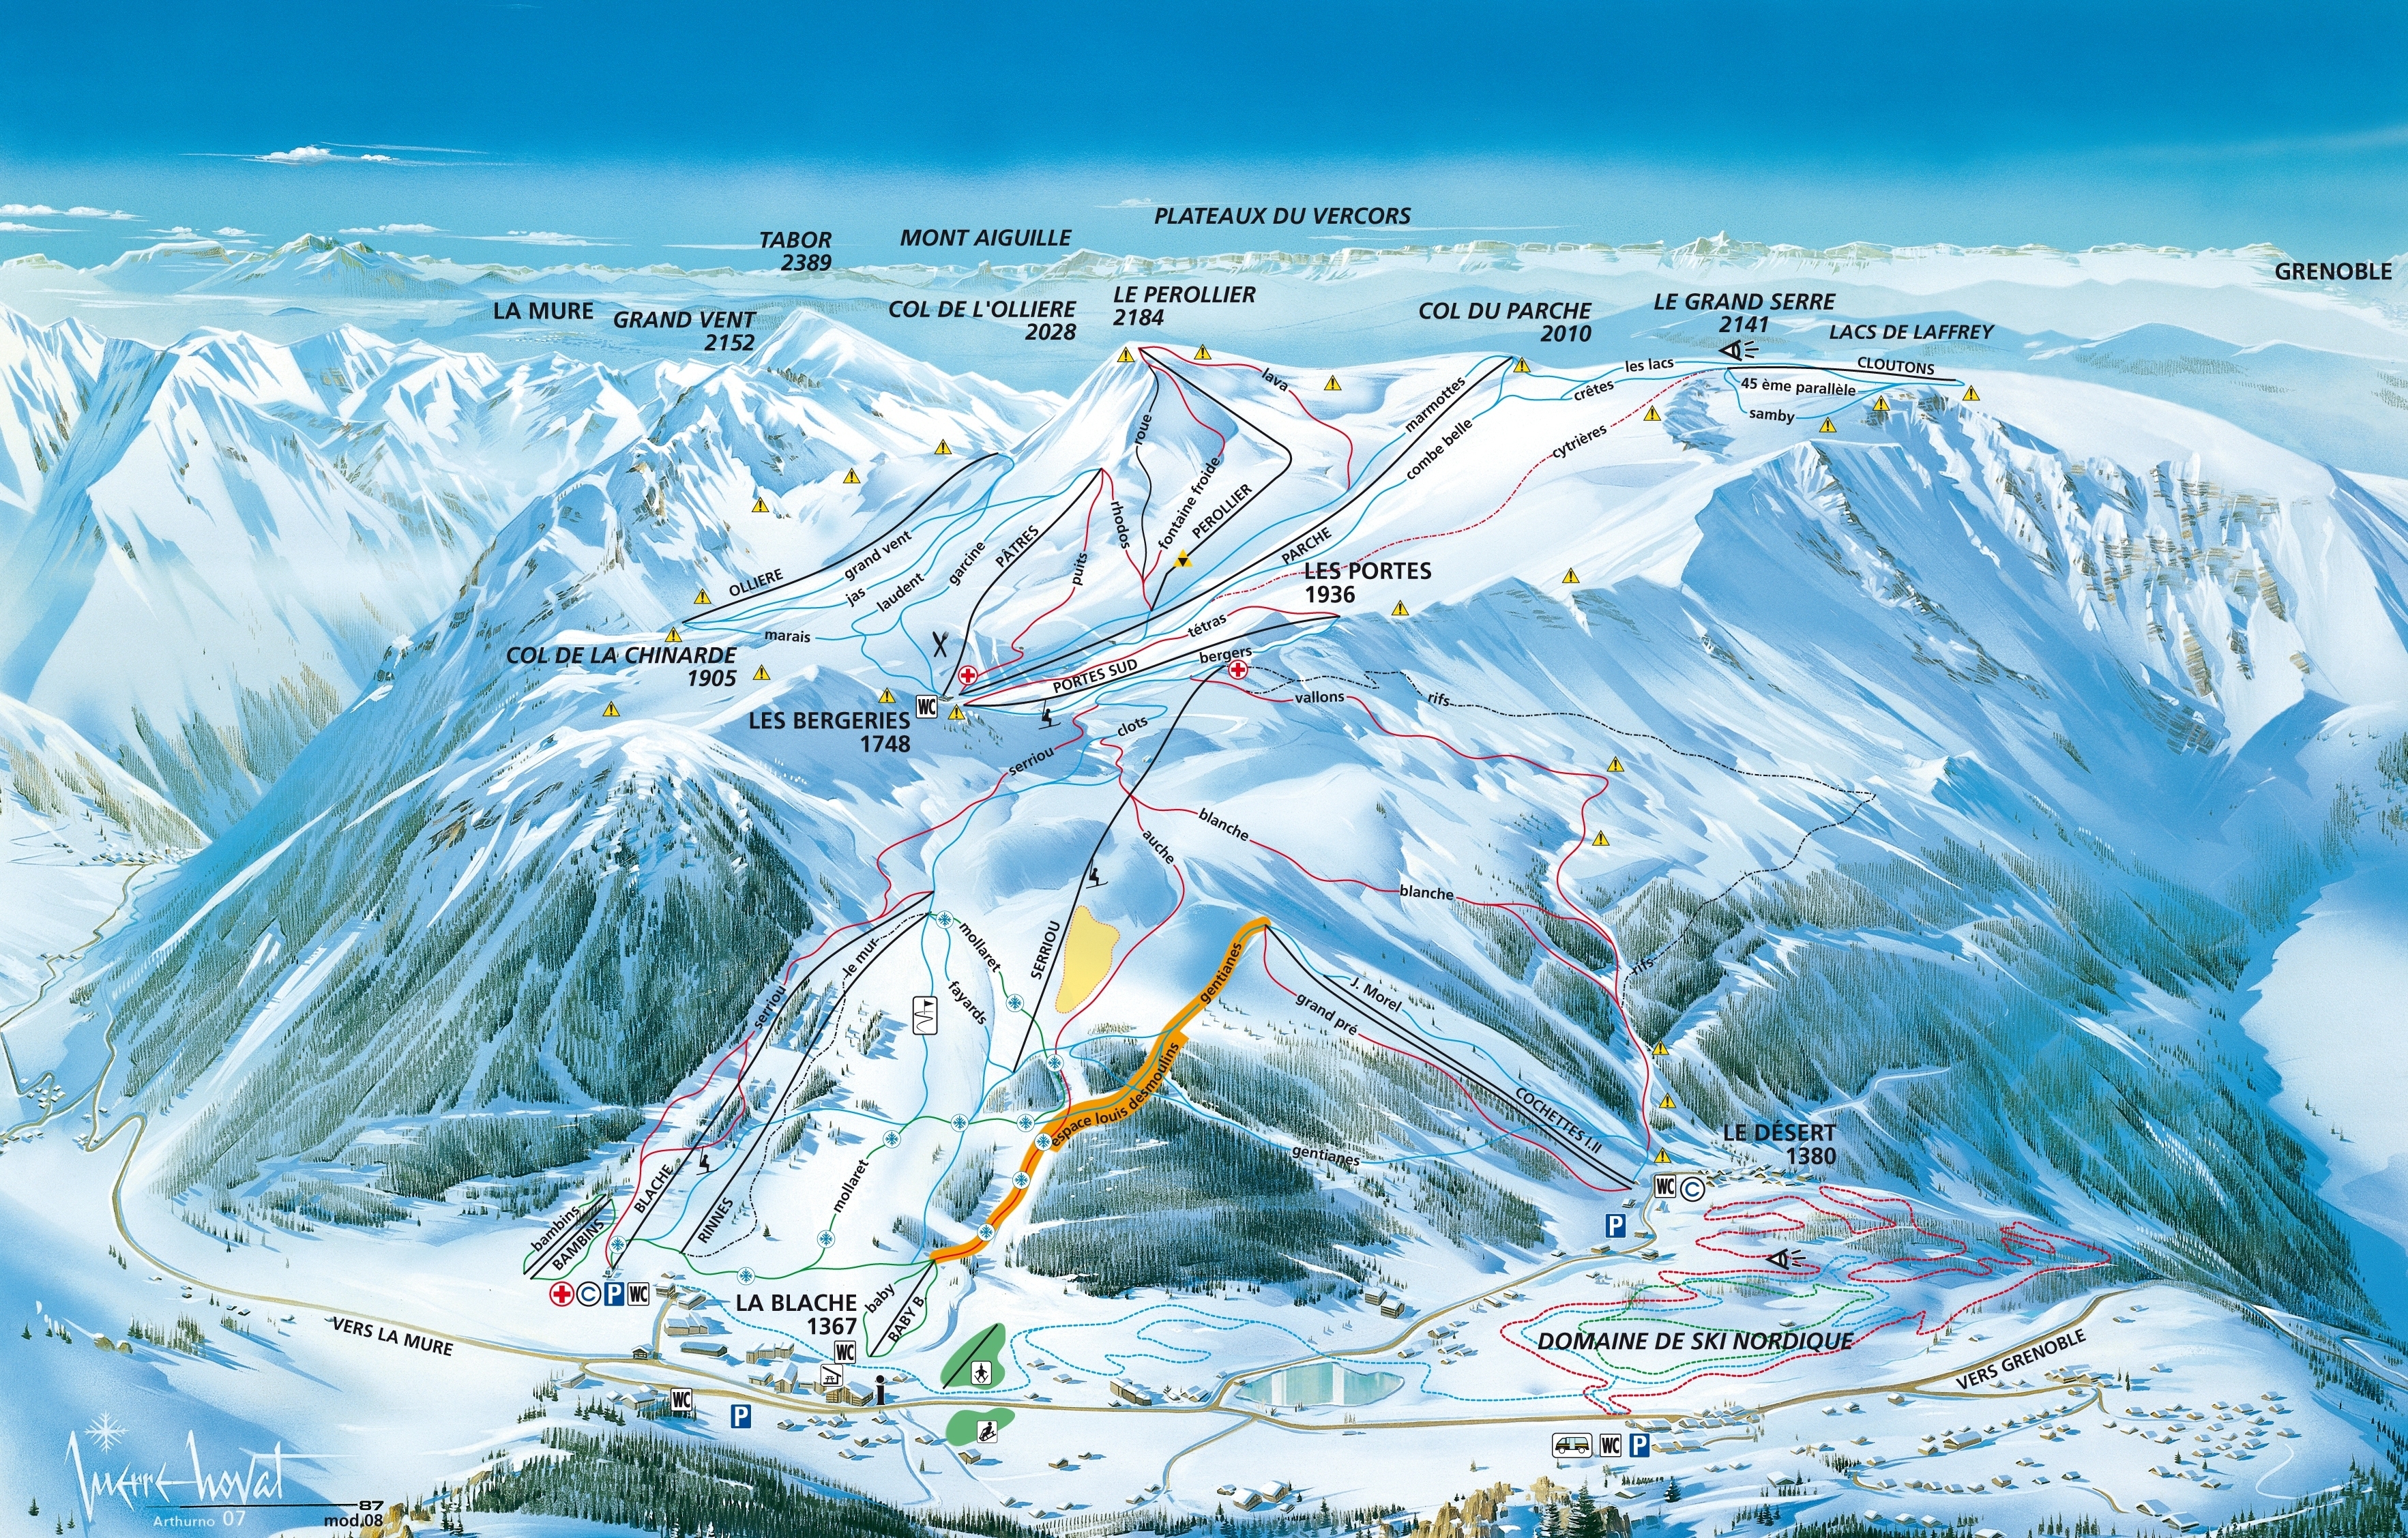 Résultat de recherche d'images pour "station alpes du grand serre"